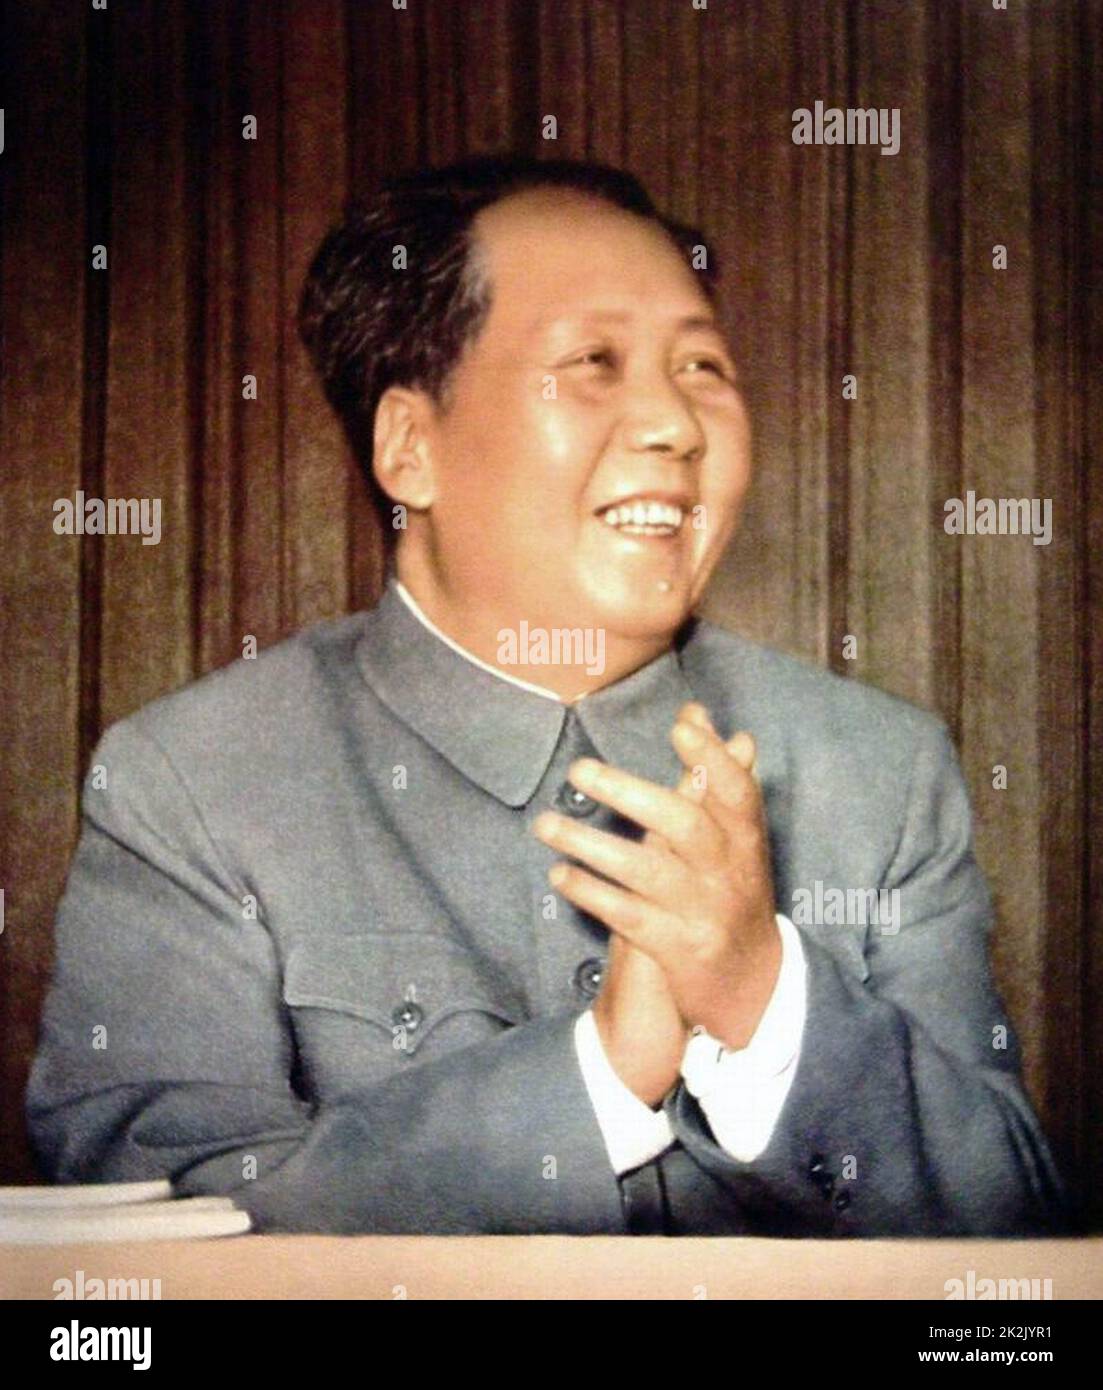 Mao Zedong (26 dicembre 1893 – 9 settembre 1976) leader rivoluzionario, politico e comunista cinese. Ha guidato la Repubblica popolare Cinese dal 1949 fino alla sua morte nel 1976. Foto Stock